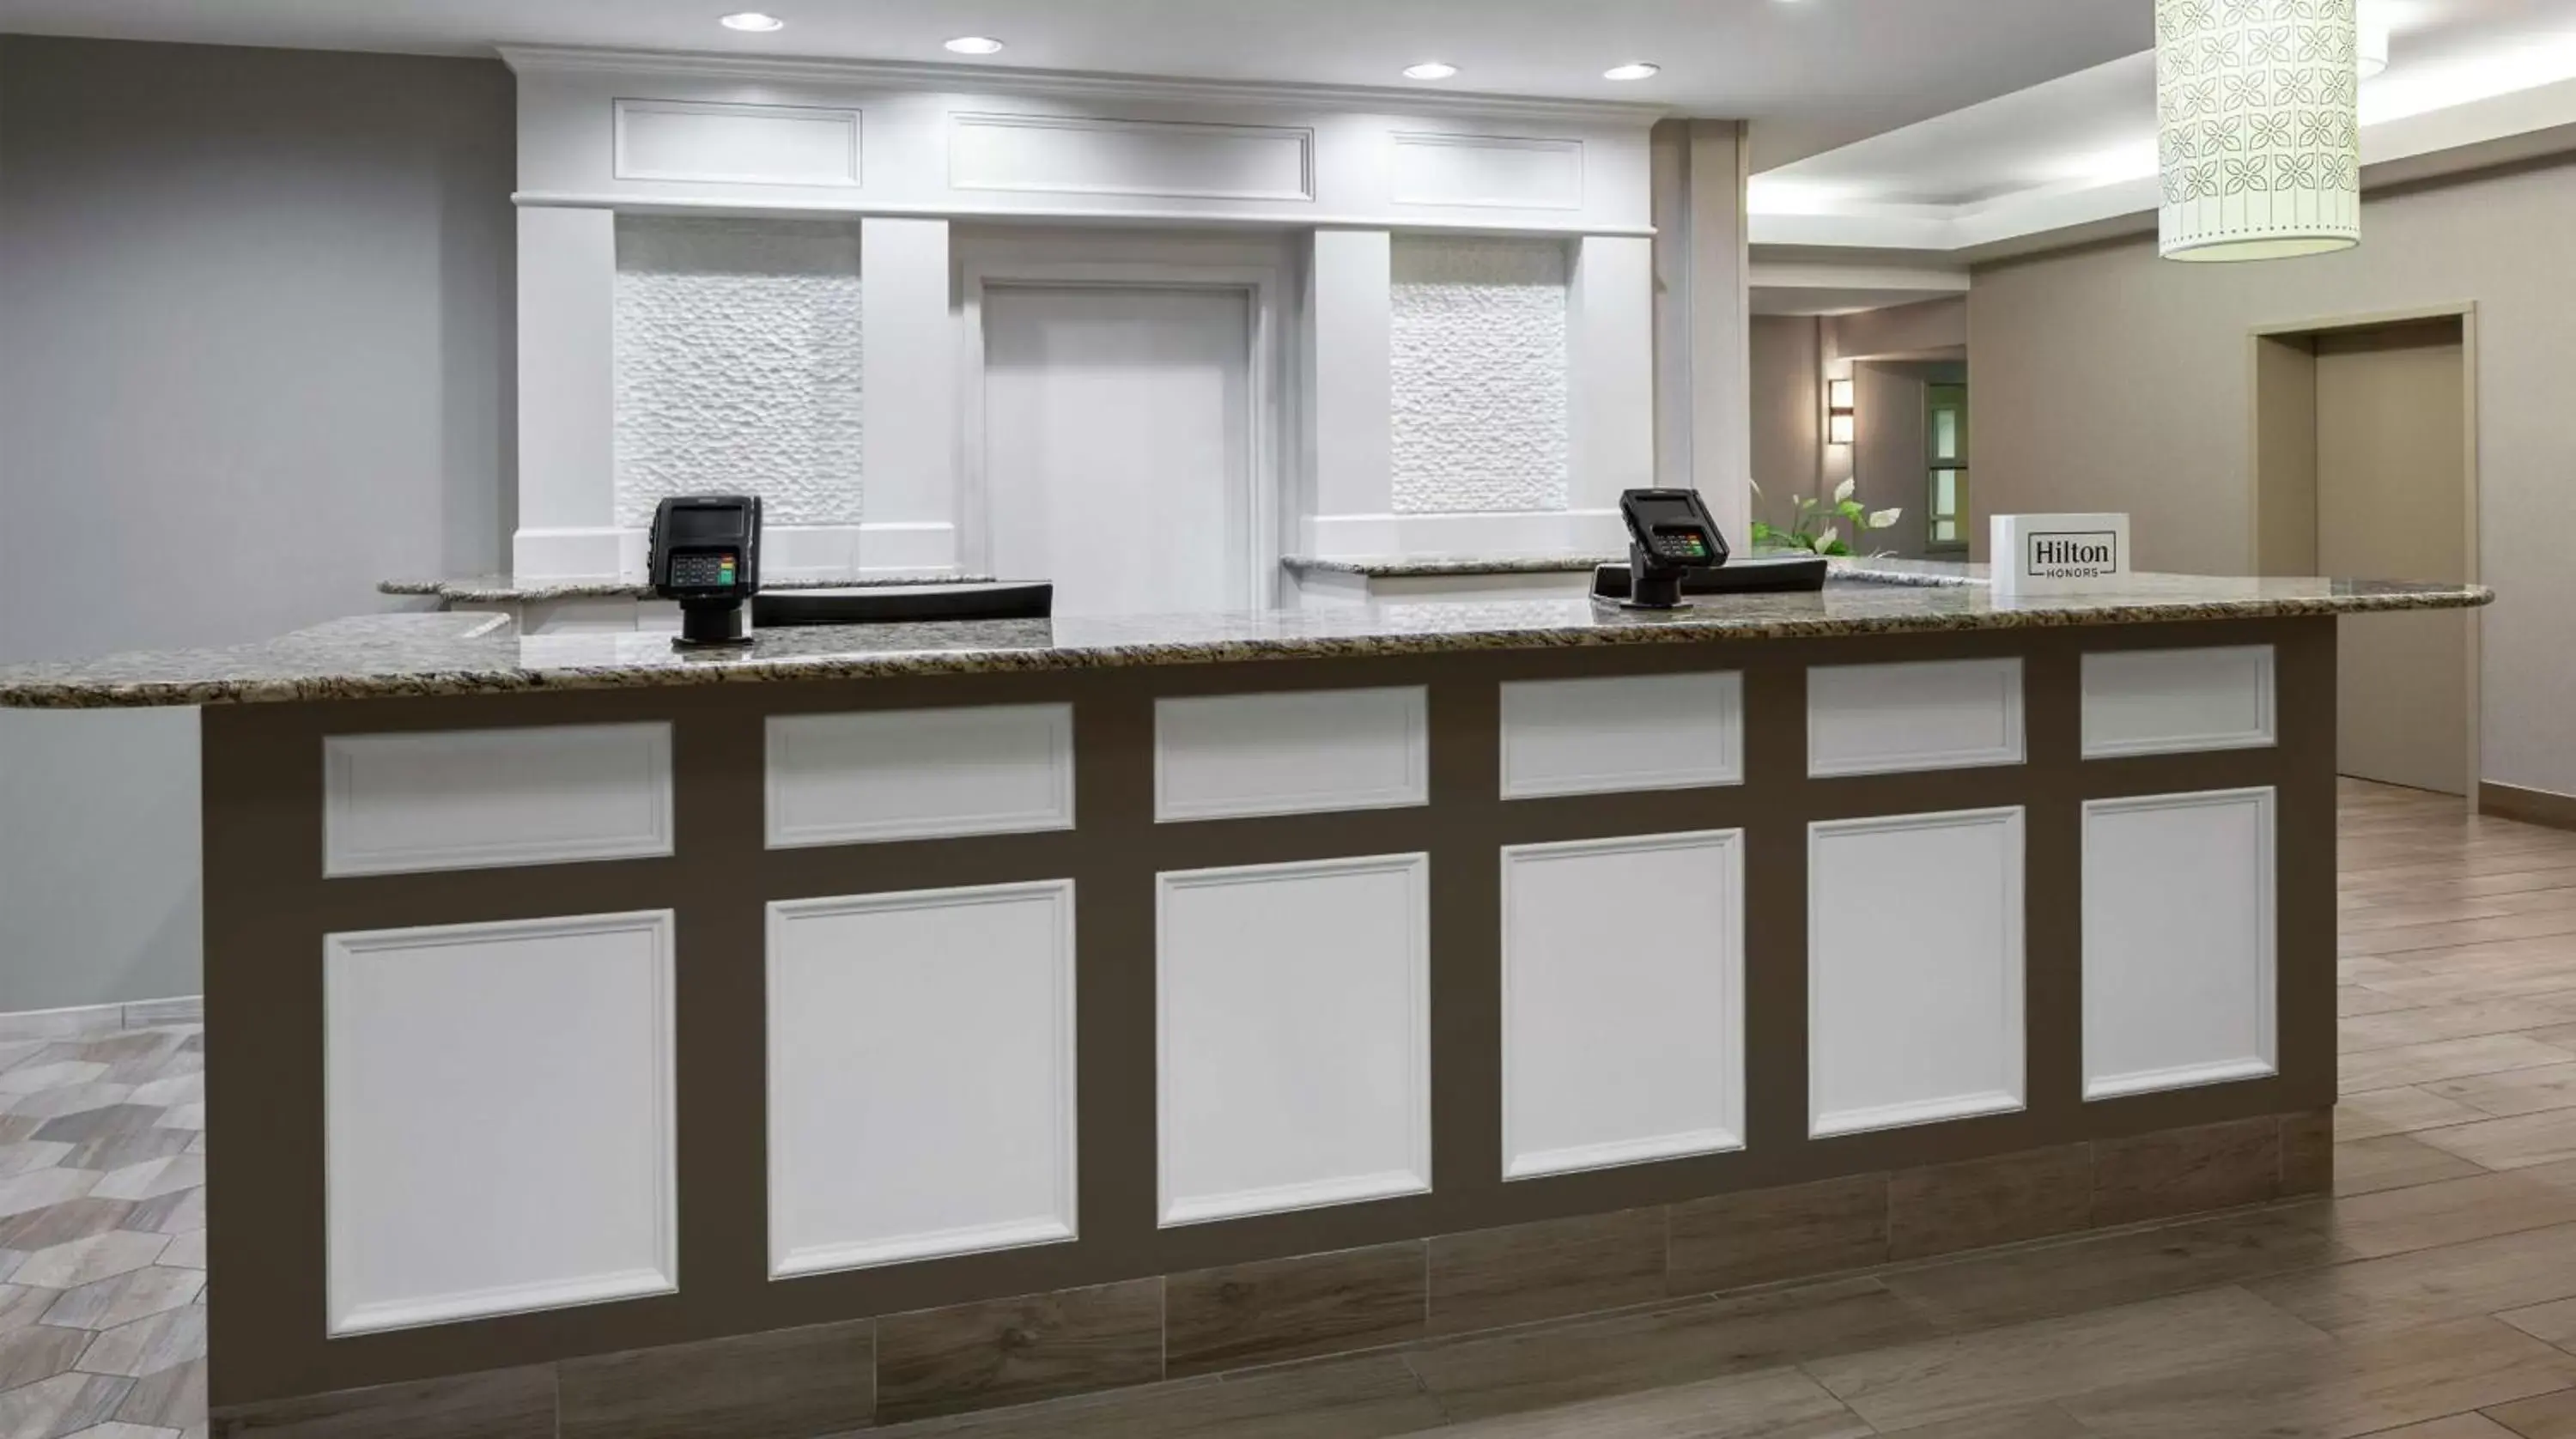 Lobby or reception, Lobby/Reception in Hilton Garden Inn Albuquerque North/Rio Rancho